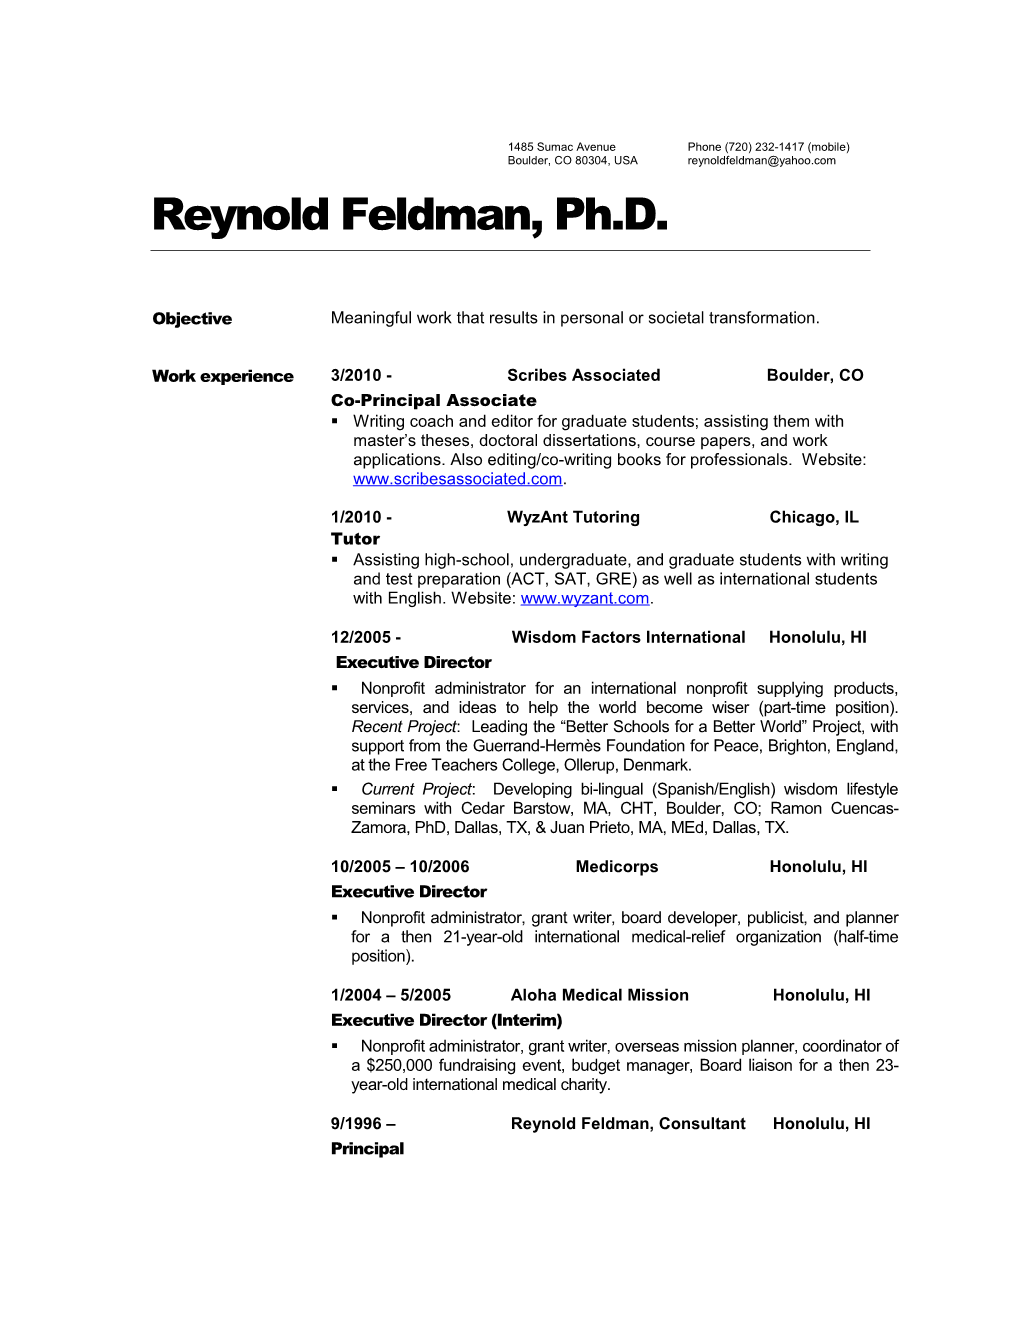 Reynold Feldman, Ph.D